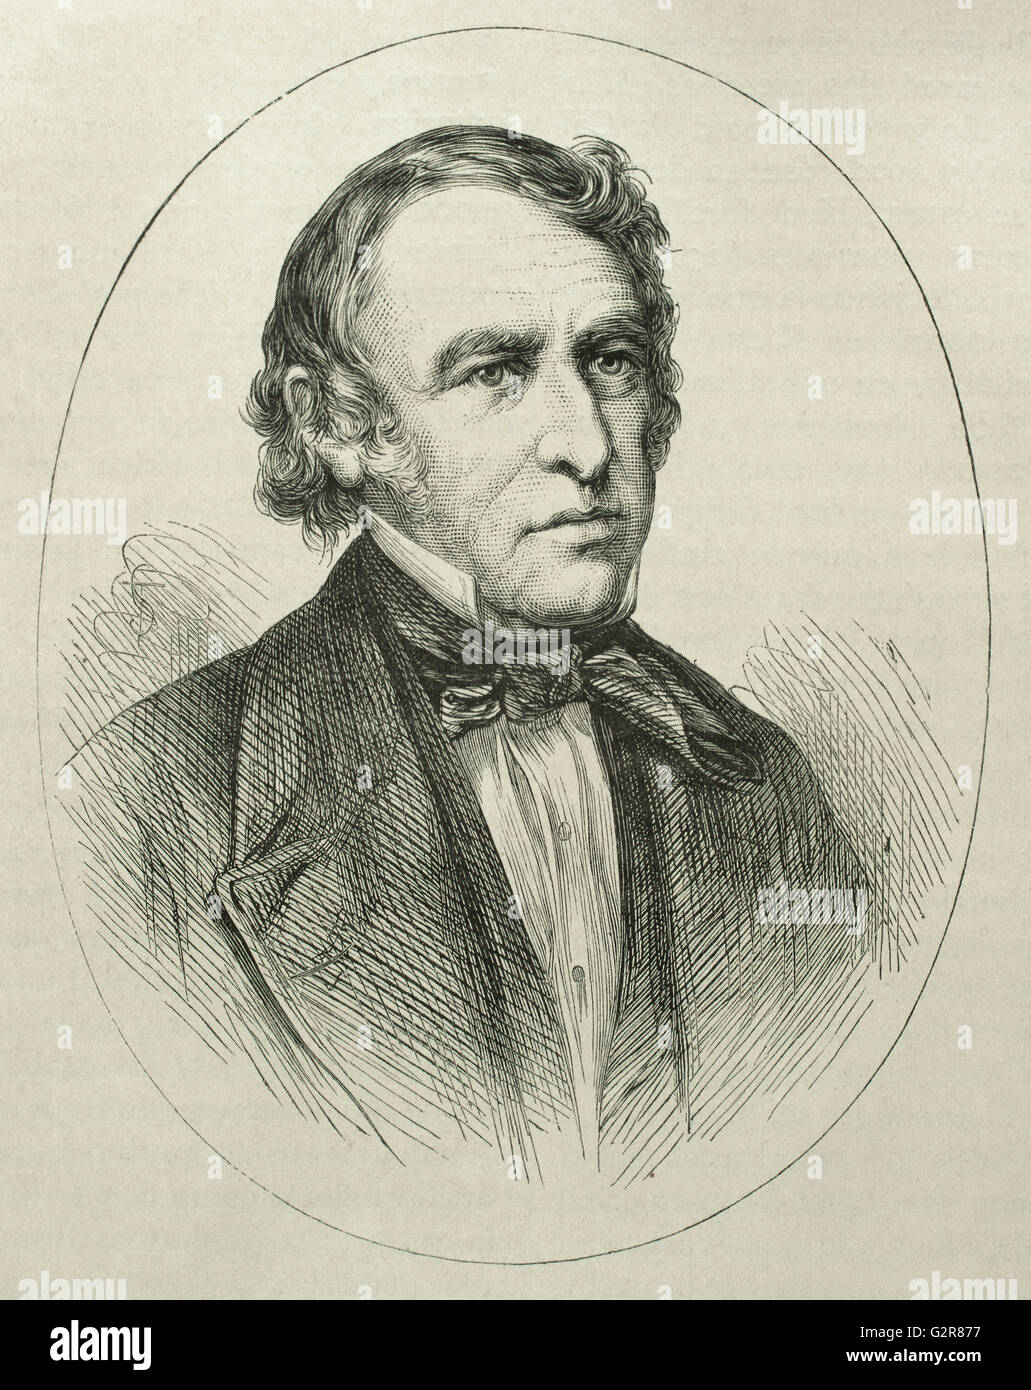 Zachary Taylor (1784-1850). US-amerikanischer Offizier und Politiker. 12. Präsident der Vereinigten Staaten (1849-1850. Porträt. Gravur. Stockfoto